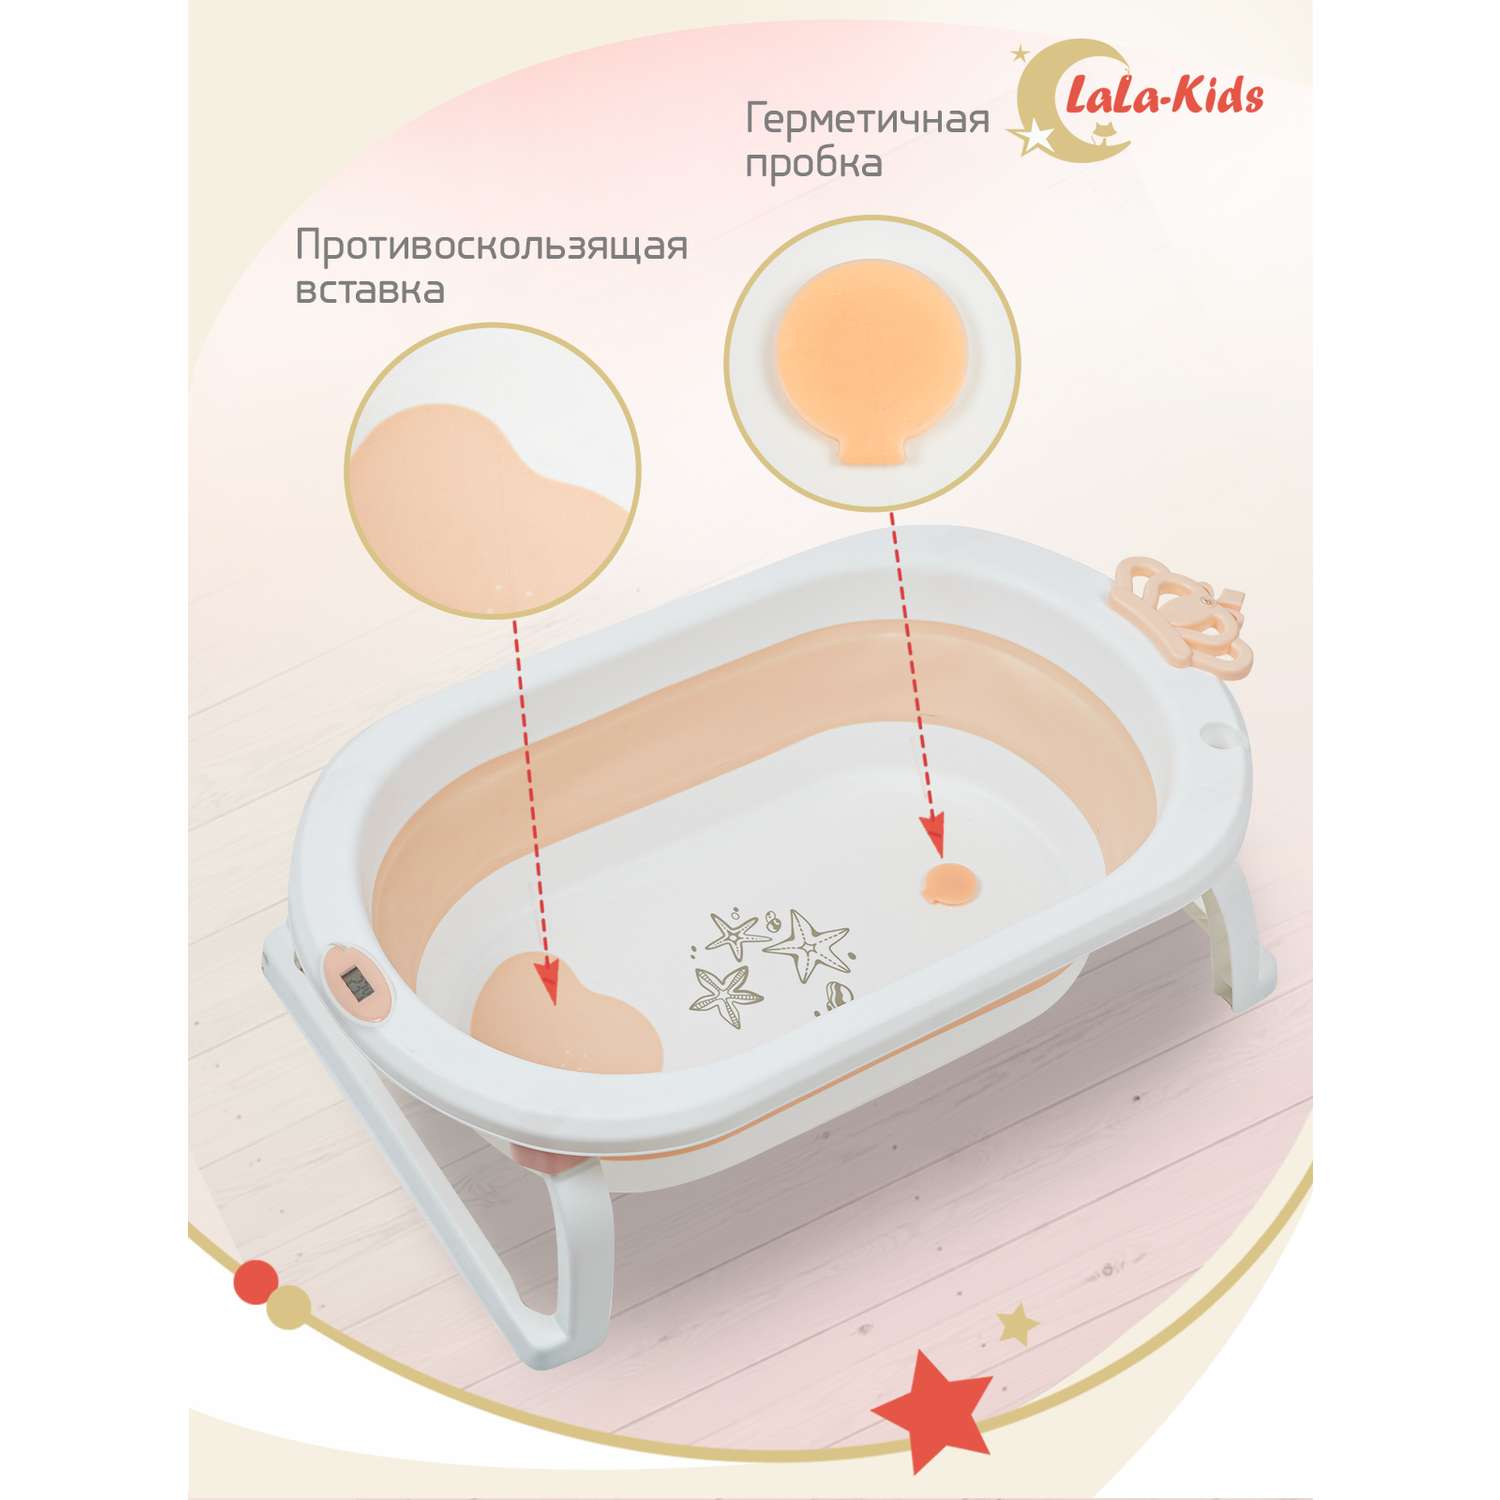 Ванночка для новорожденных LaLa-Kids складная с матрасиком и термометром в комплекте - фото 7